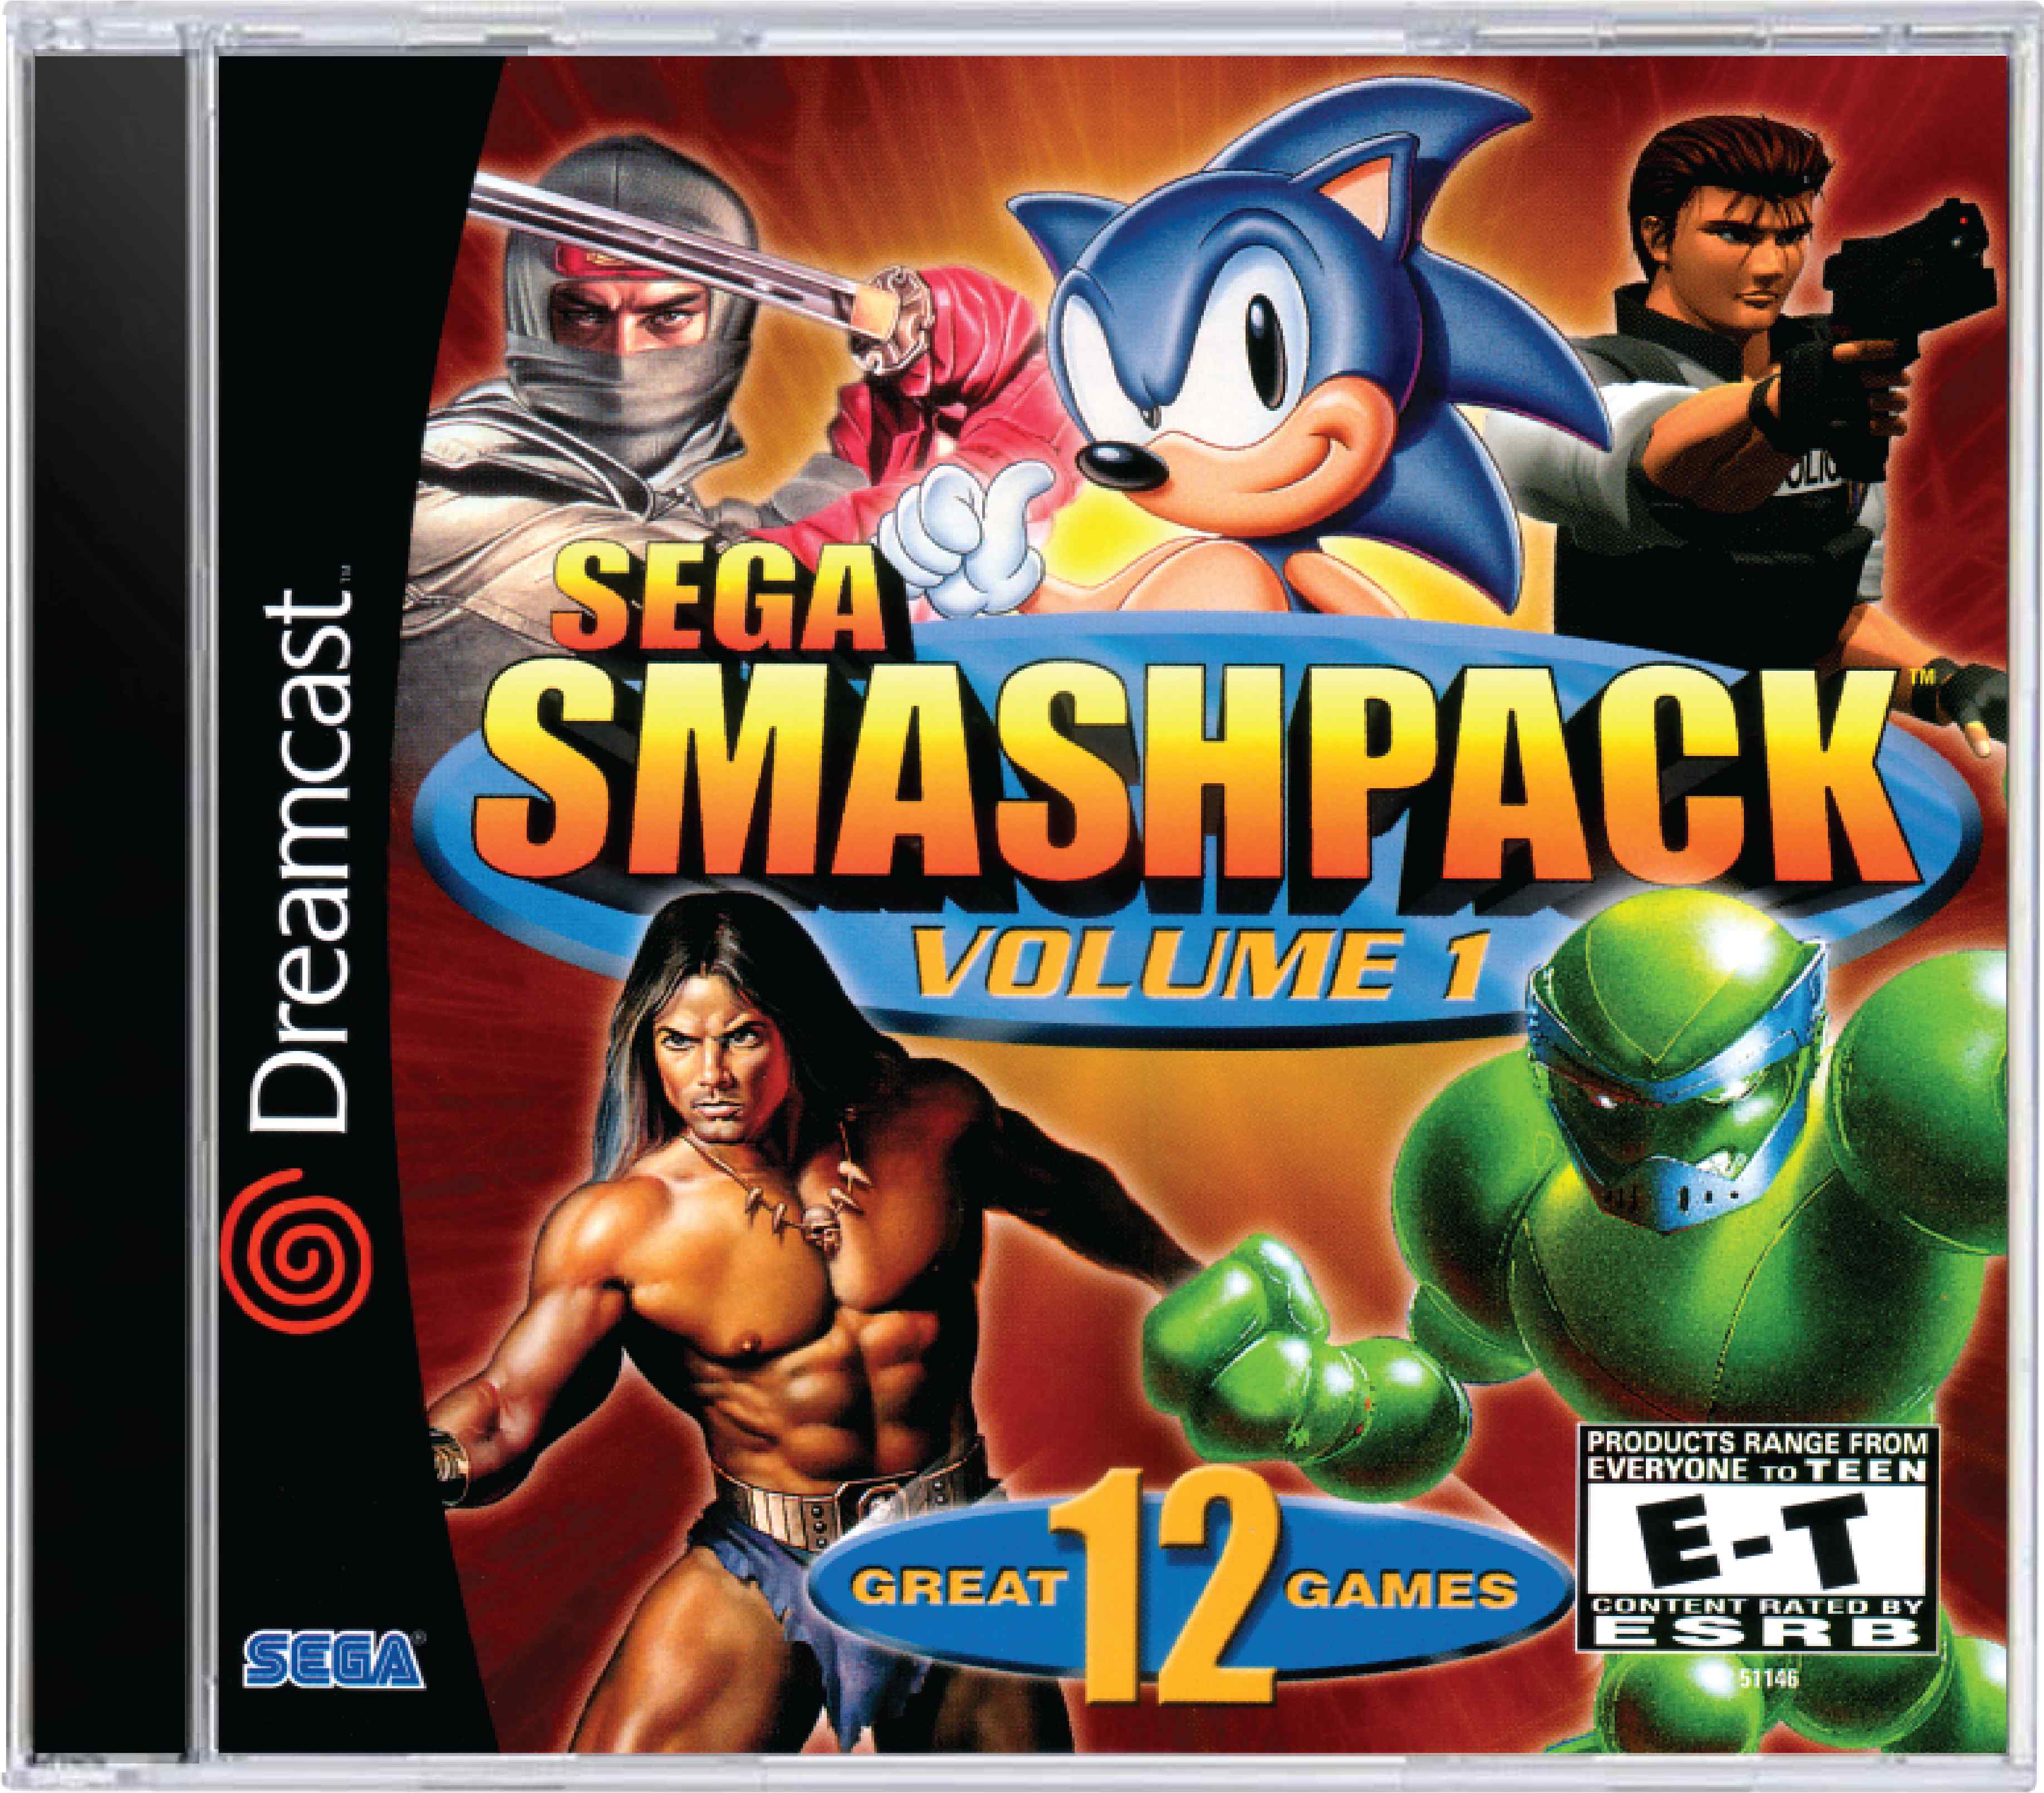 SEGA Smash Pack Volume 1 Cover Art